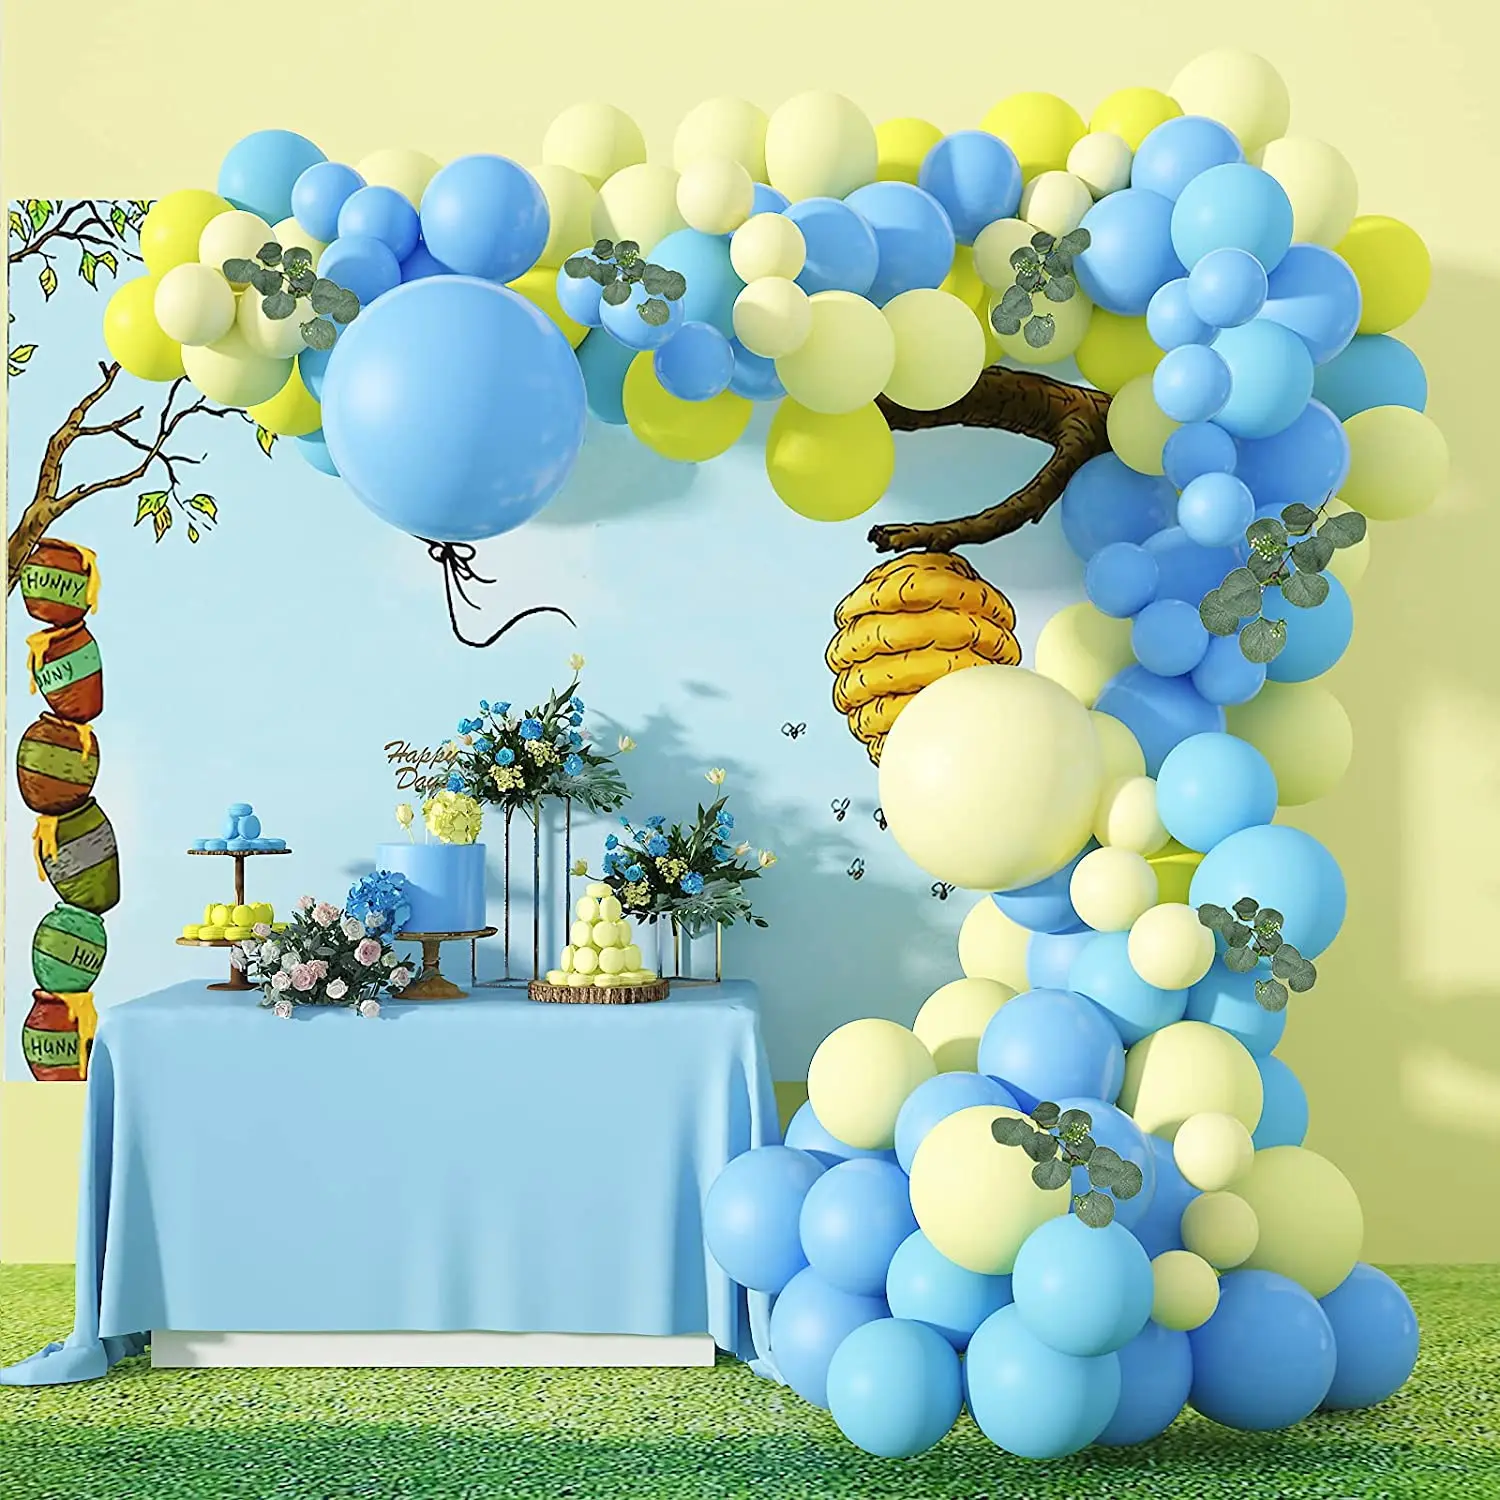 Hãy trang trí bữa tiệc của bạn với bộ phụ kiện bóng bay xanh và vàng đầy màu sắc. Bạn sẽ không thể nhịn được cười khi thấy những bóng bay nhiều màu sắc vui nhộn này.